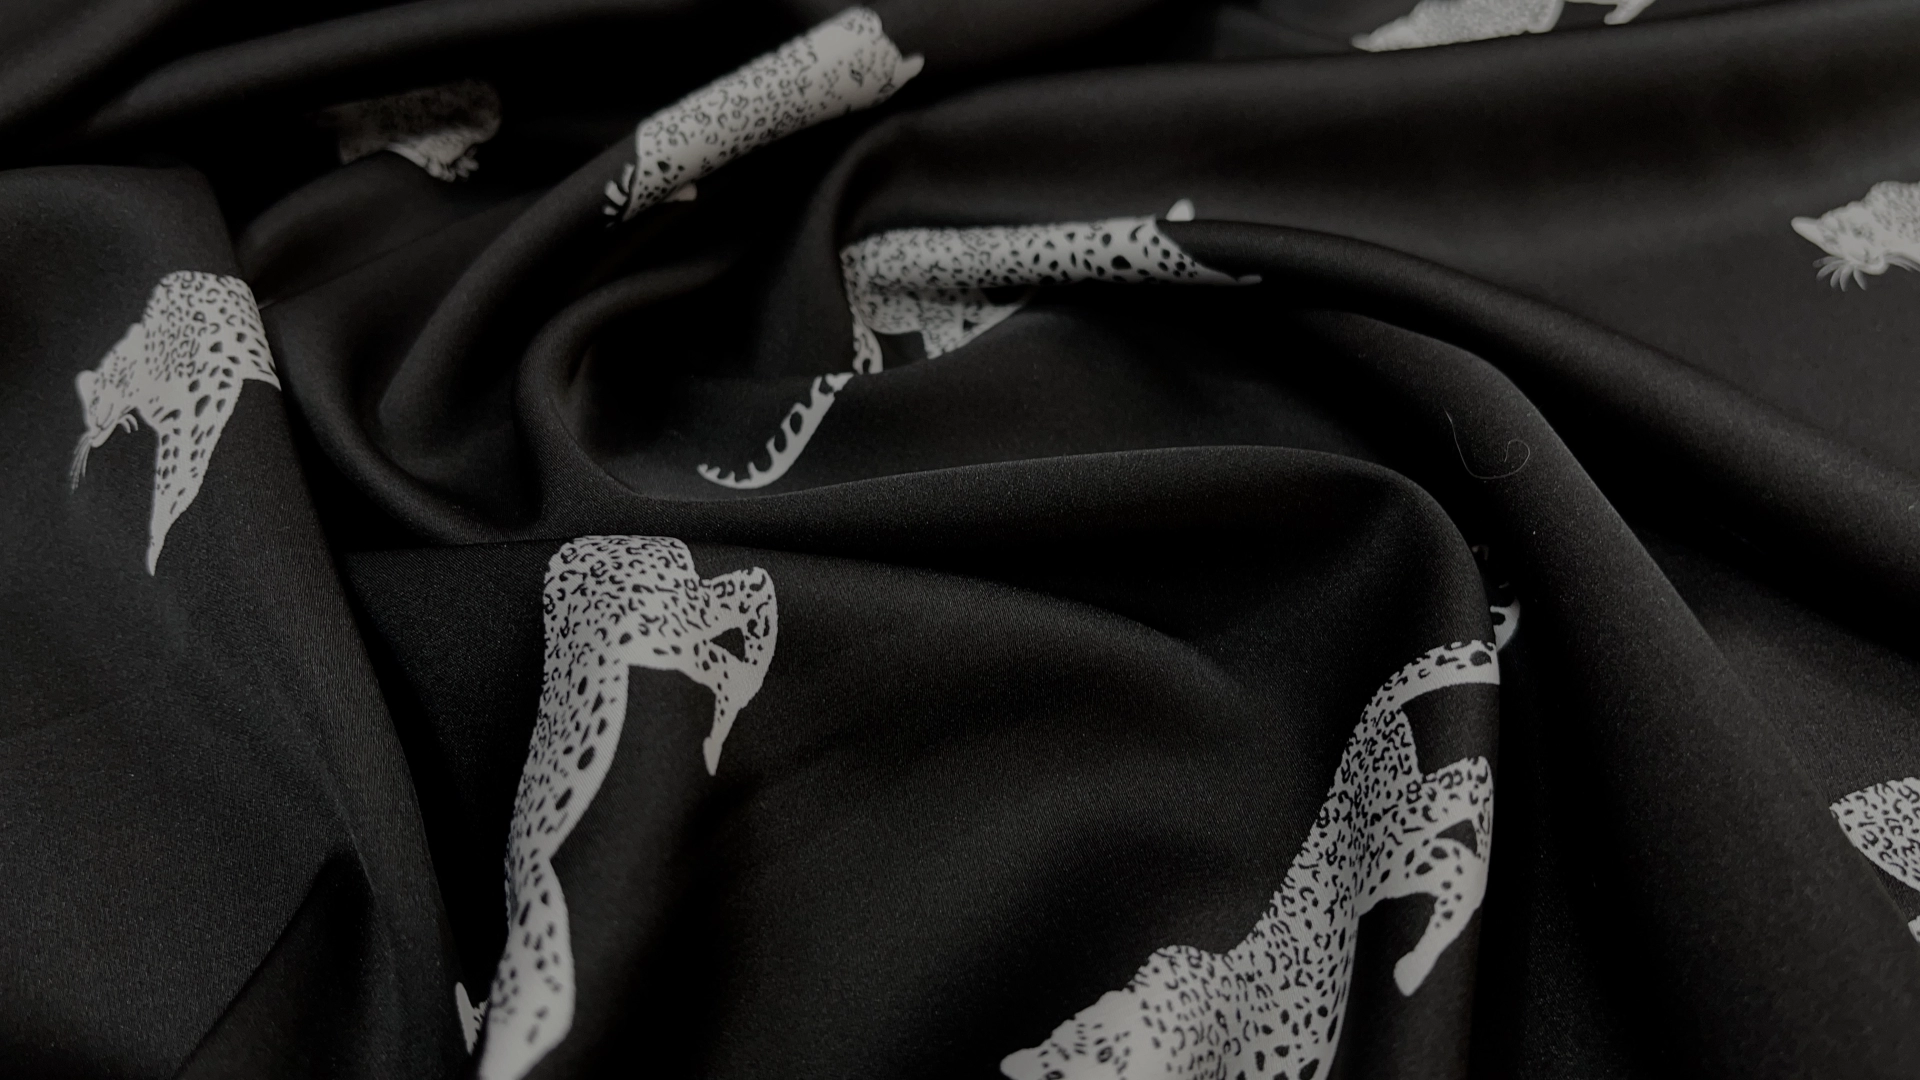 Атлас с торговым названием Армани, на черном фоне белые леопарды. Тактильно атлас очень приятный, мягкий и струящийся. Идеален для пошива рубашки или платья.